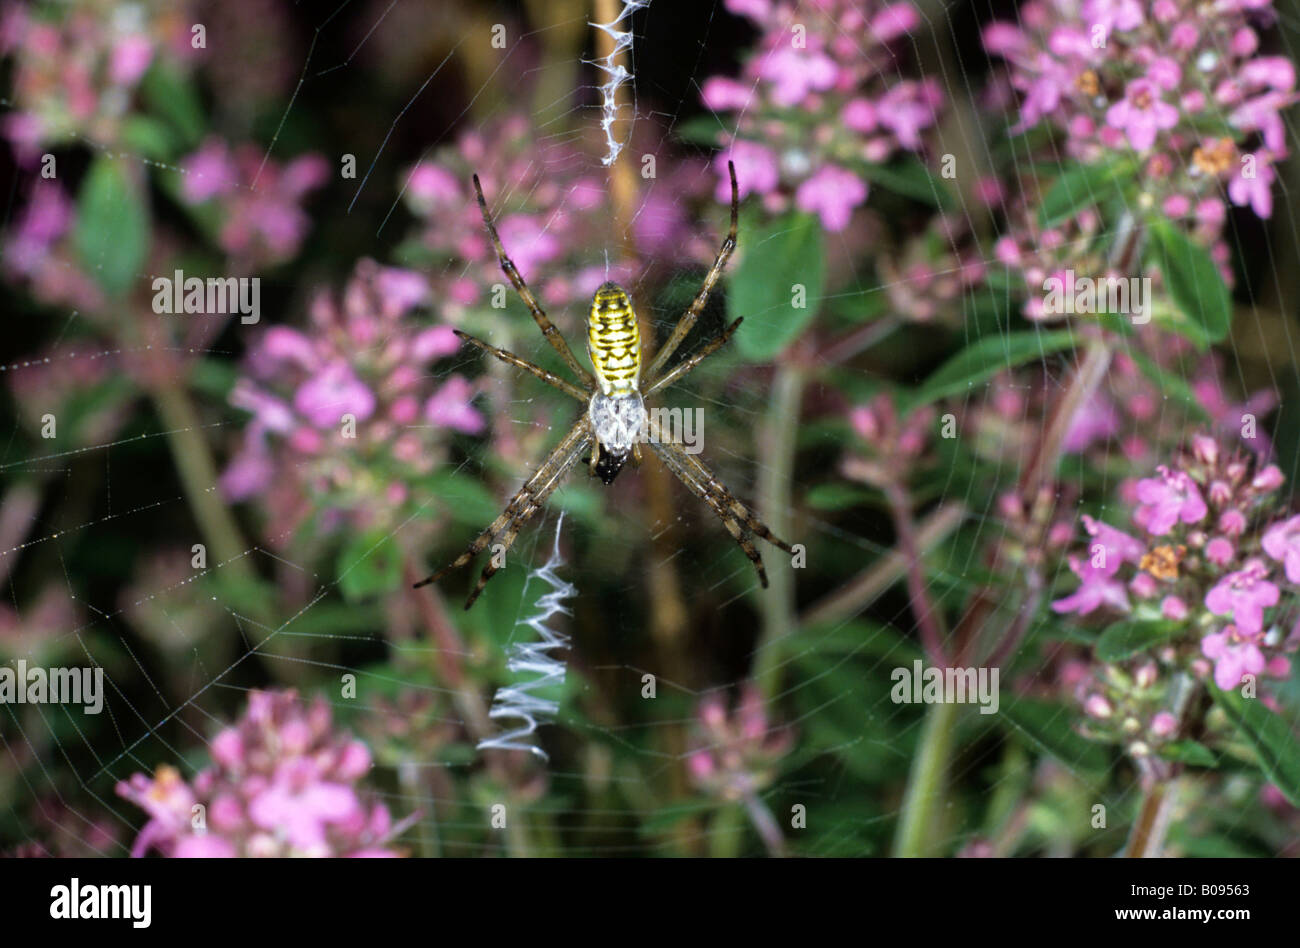 Wasp Spider (Argyope bruennichi), Argiope family, small spider in a web woven in Wild Thyme (Thymus serpyllum) Stock Photo